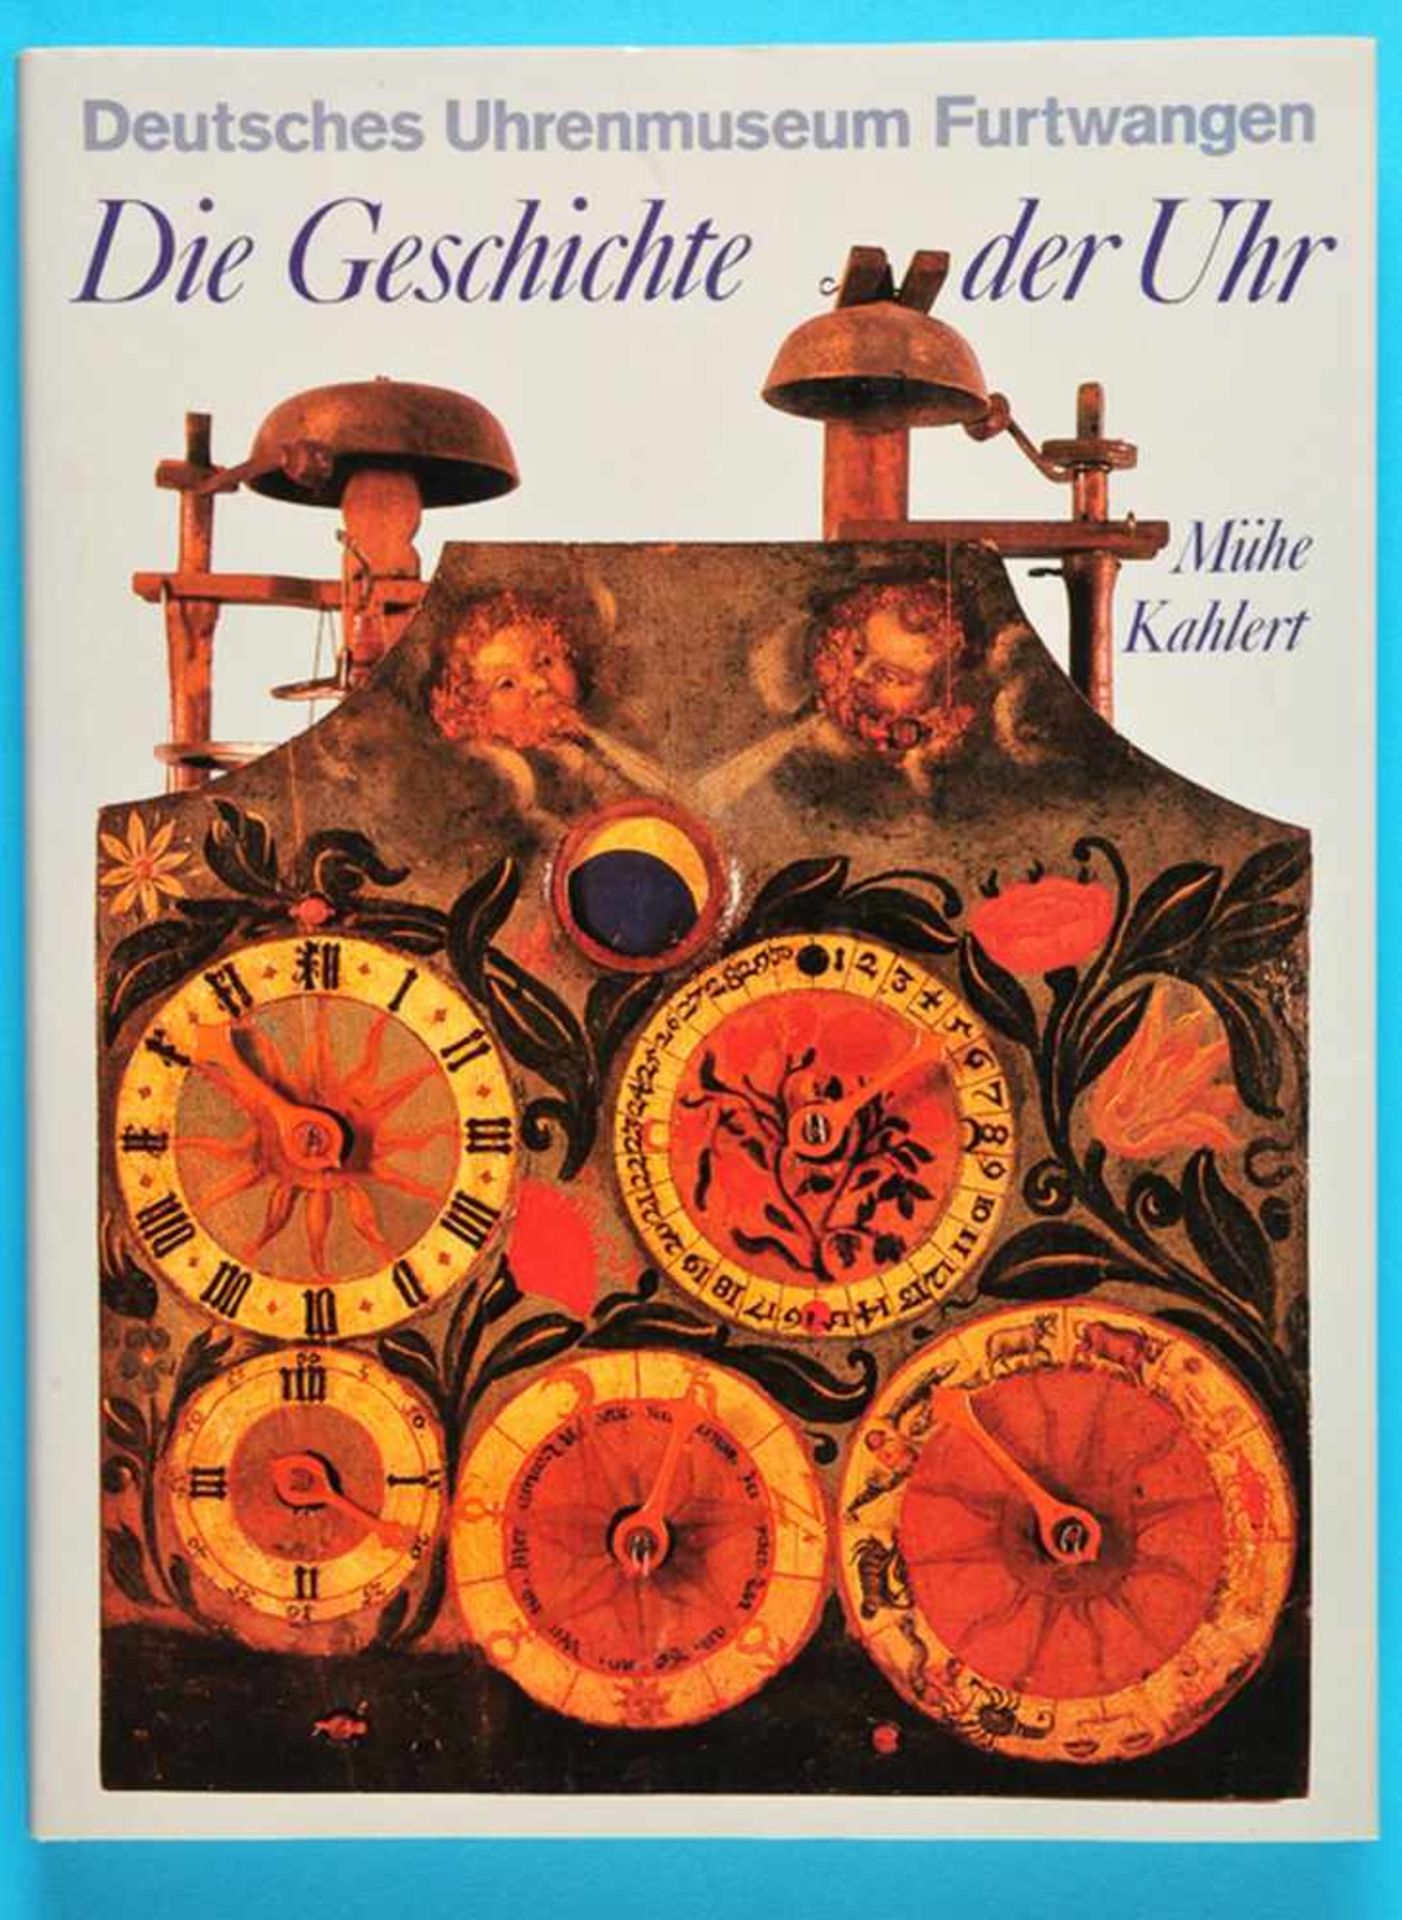 Mühe/Kahlert, Die Geschichte der Uhr, Deutsches Uhrenmuseum Furtwangen, 2. Auflage, 1984, 160 Seiten